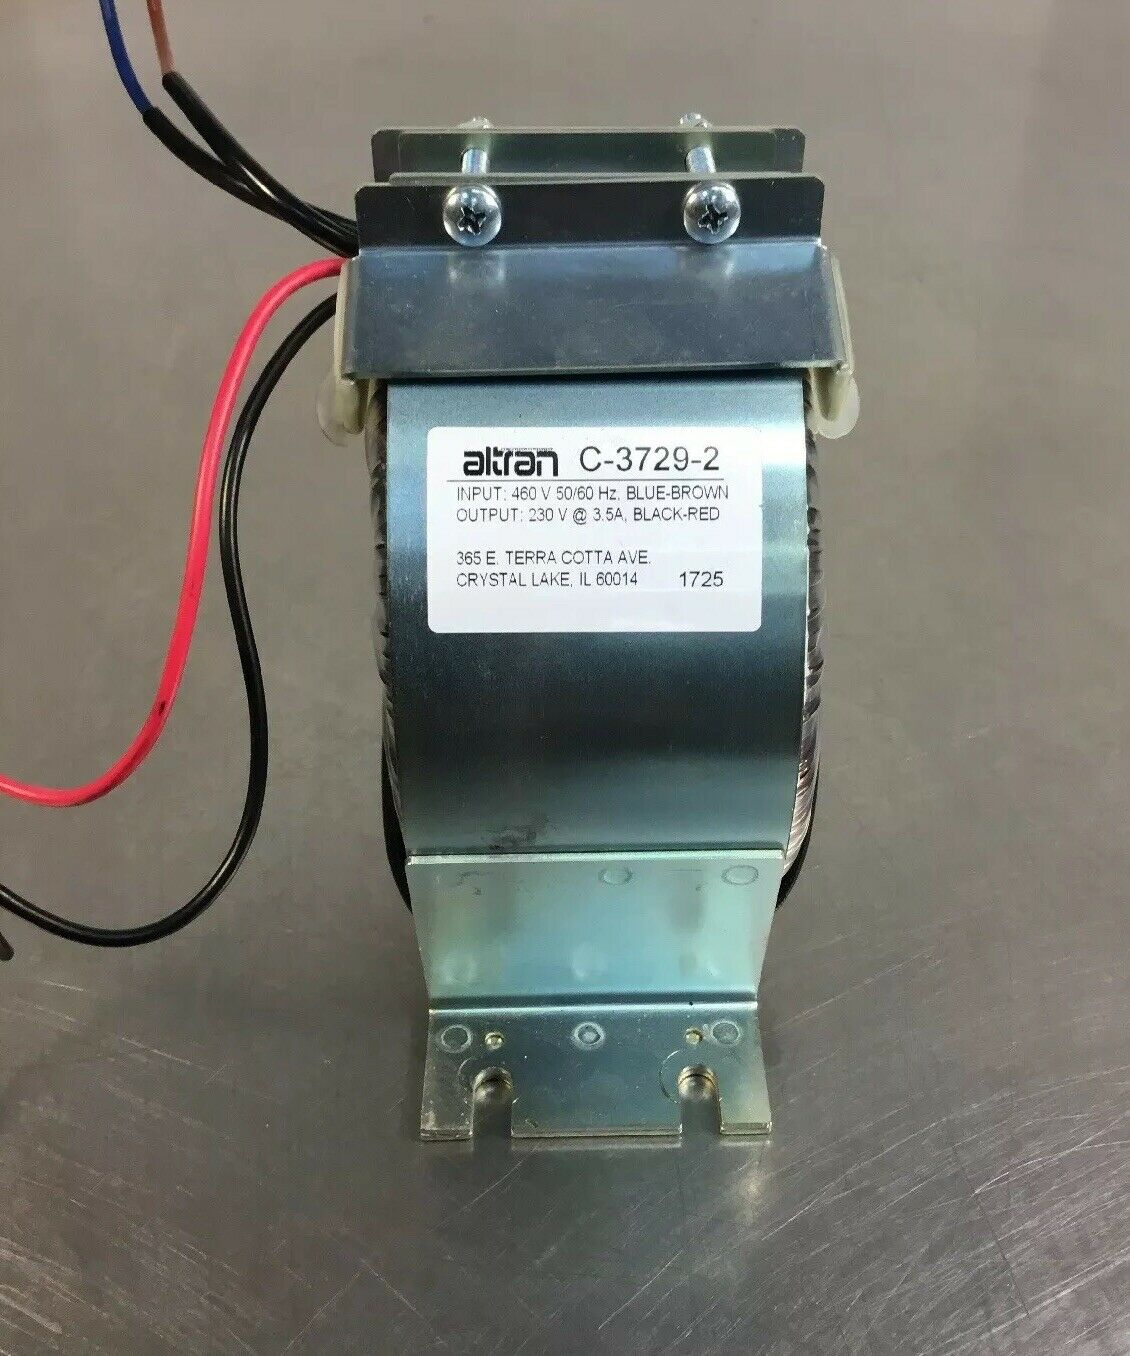 ALTRAN C-3729-2 Audio Transformer In:460V Out:230V @ 3.5A    4C